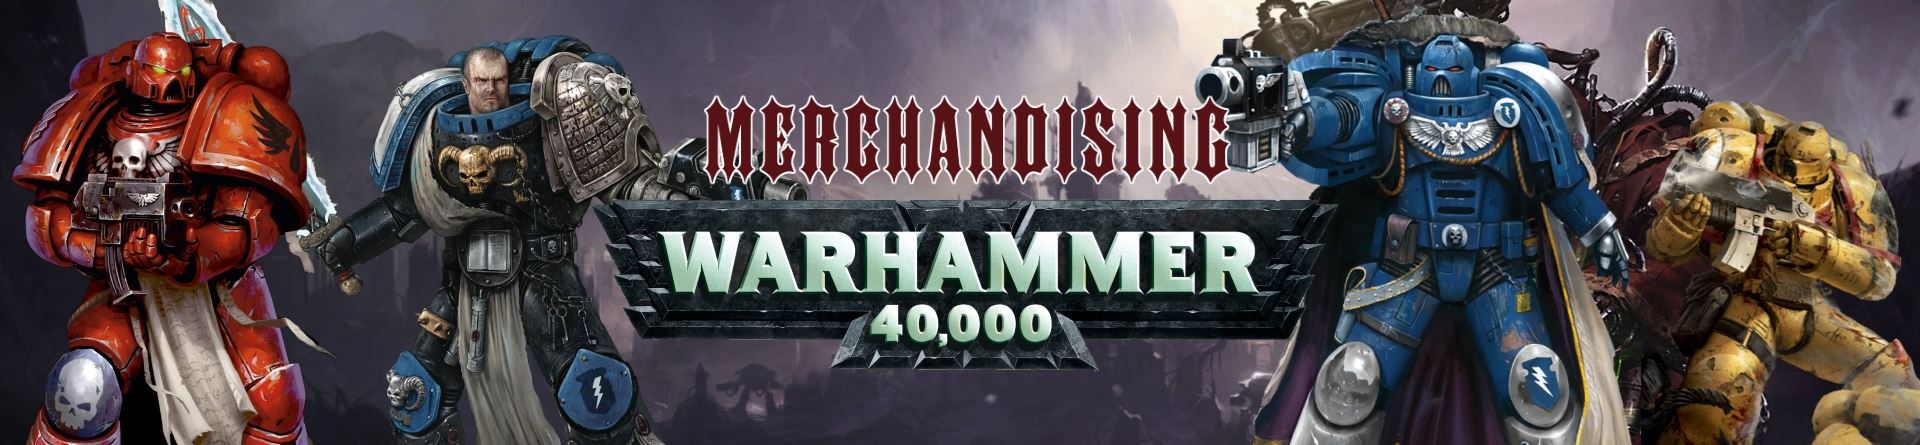 Warhammer 40.000 Merchandising